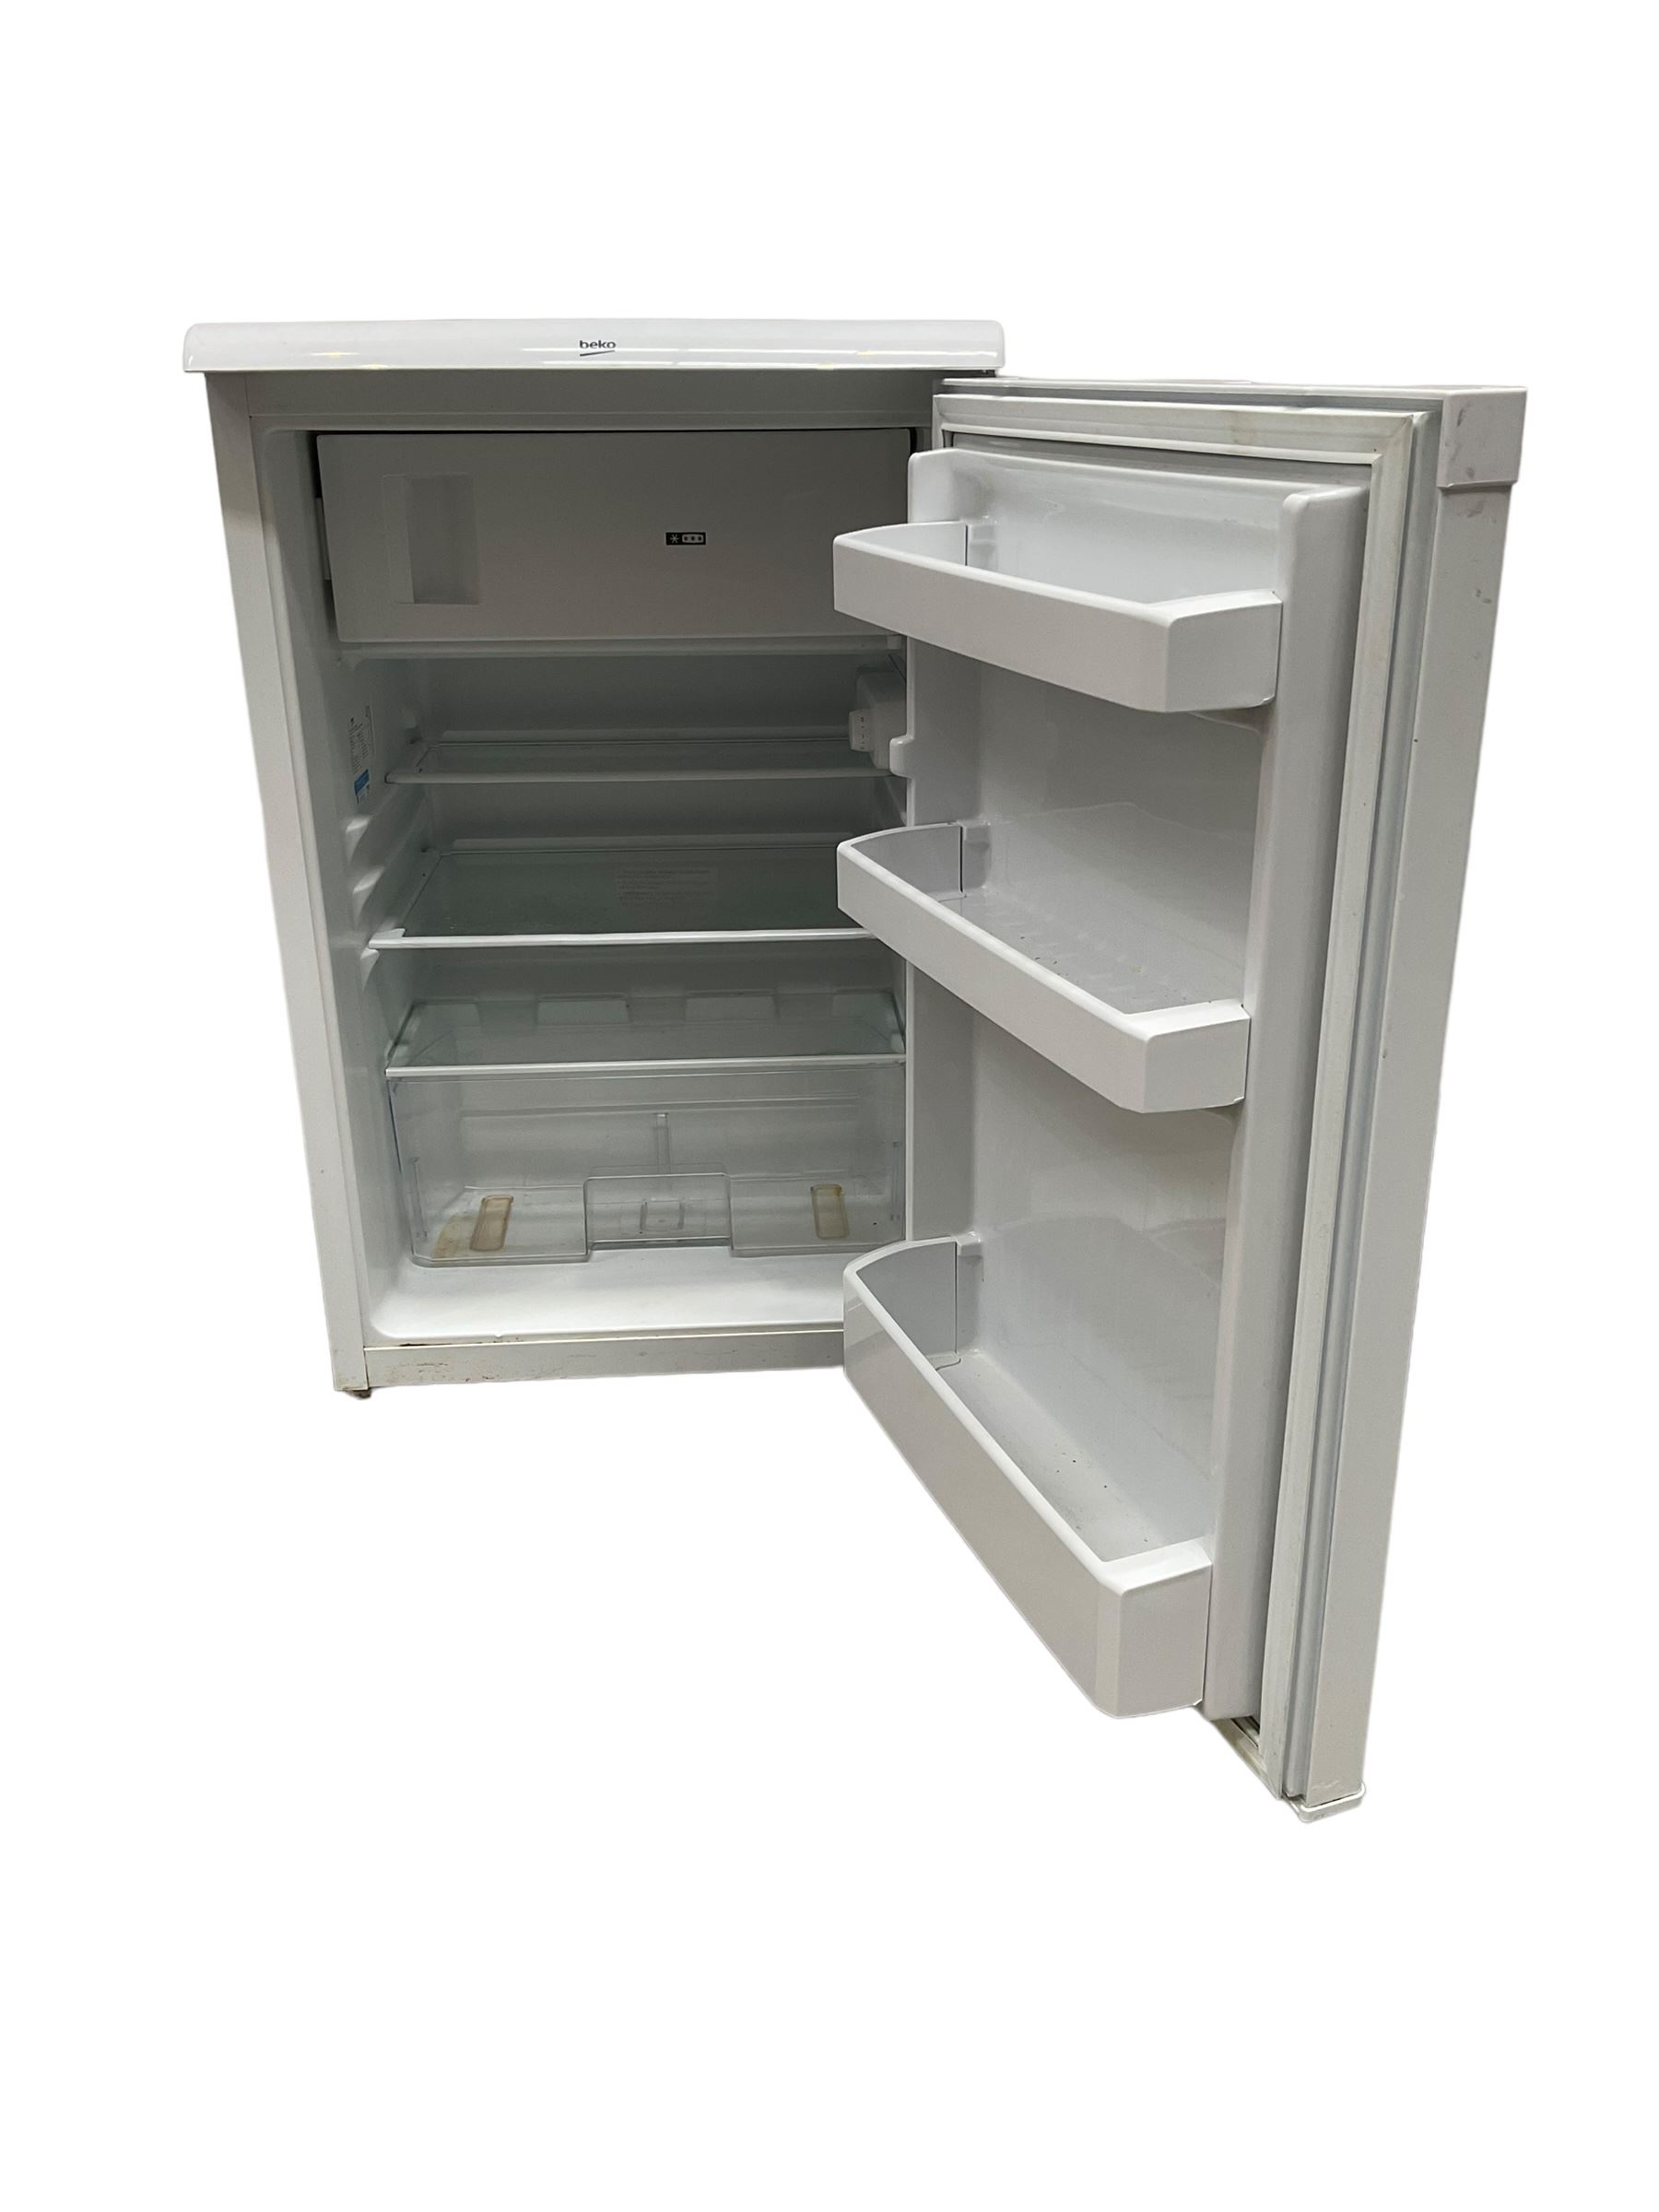 Beko under counter fridge in white - Bild 2 aus 2